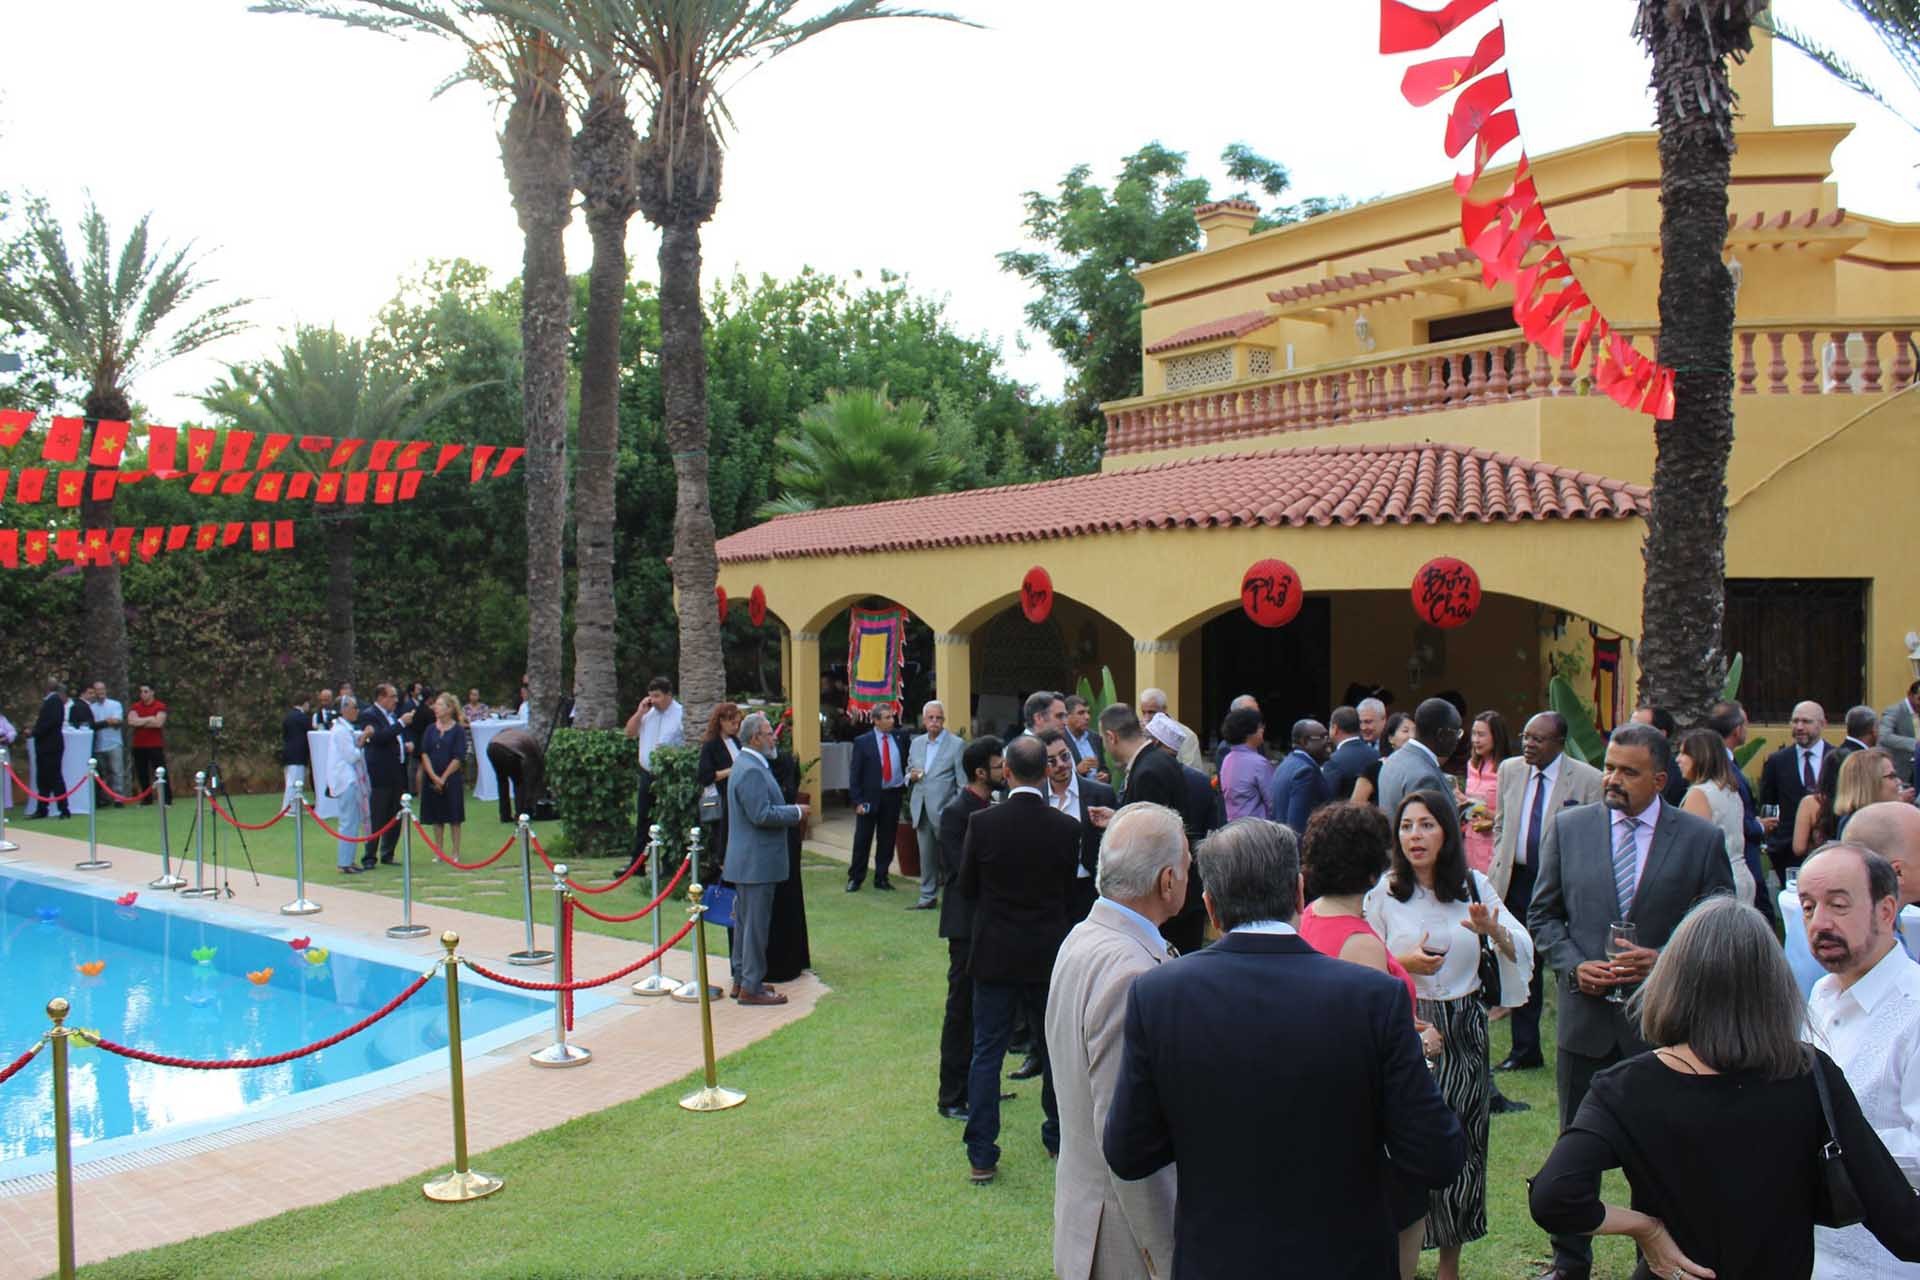 Đại sứ quán Việt Nam tại Morocco tổ chức kỷ niệm 78 năm Quốc khánh 2/9